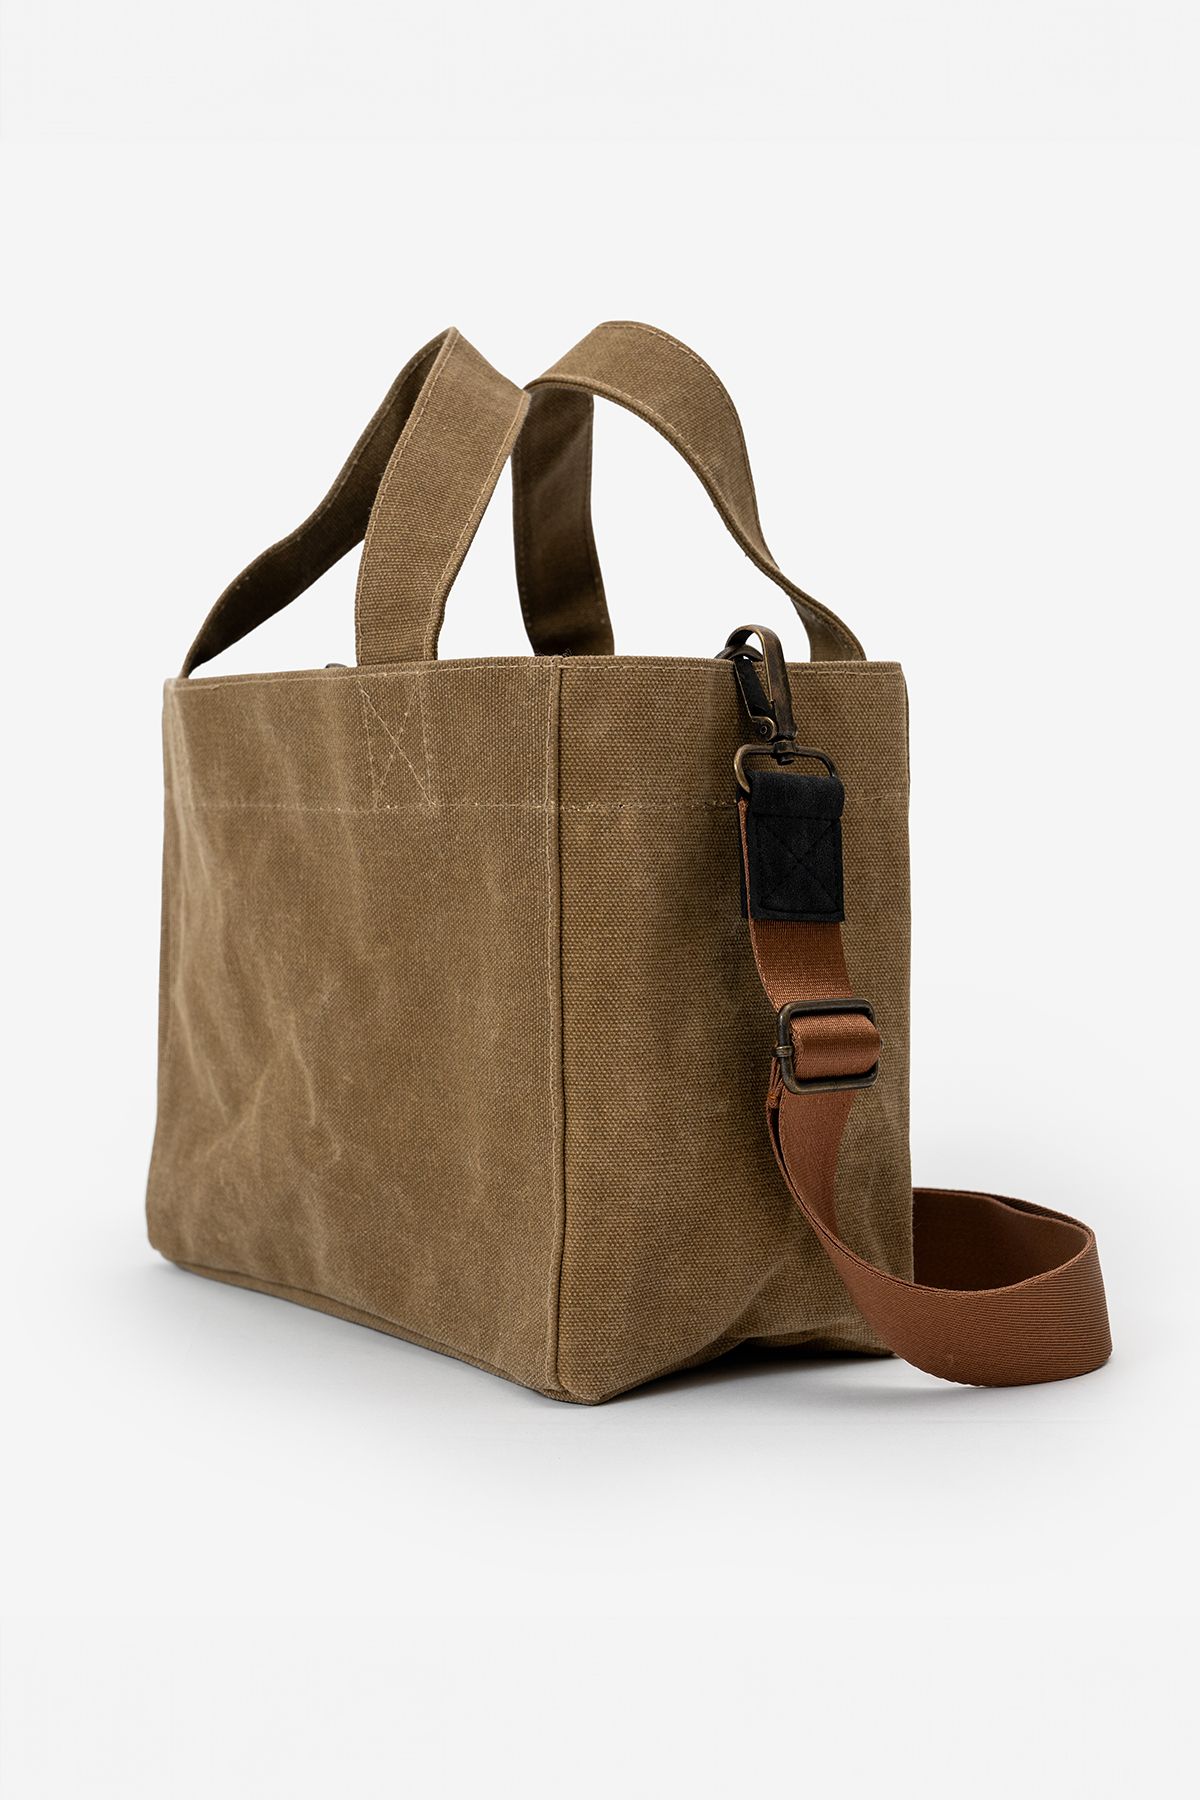 Goo Leather Goods Diana Bag Camel Açık Kahve Kanvas Askılı Omuz Ve El Çantası Tote Bag Günlük Kullanım